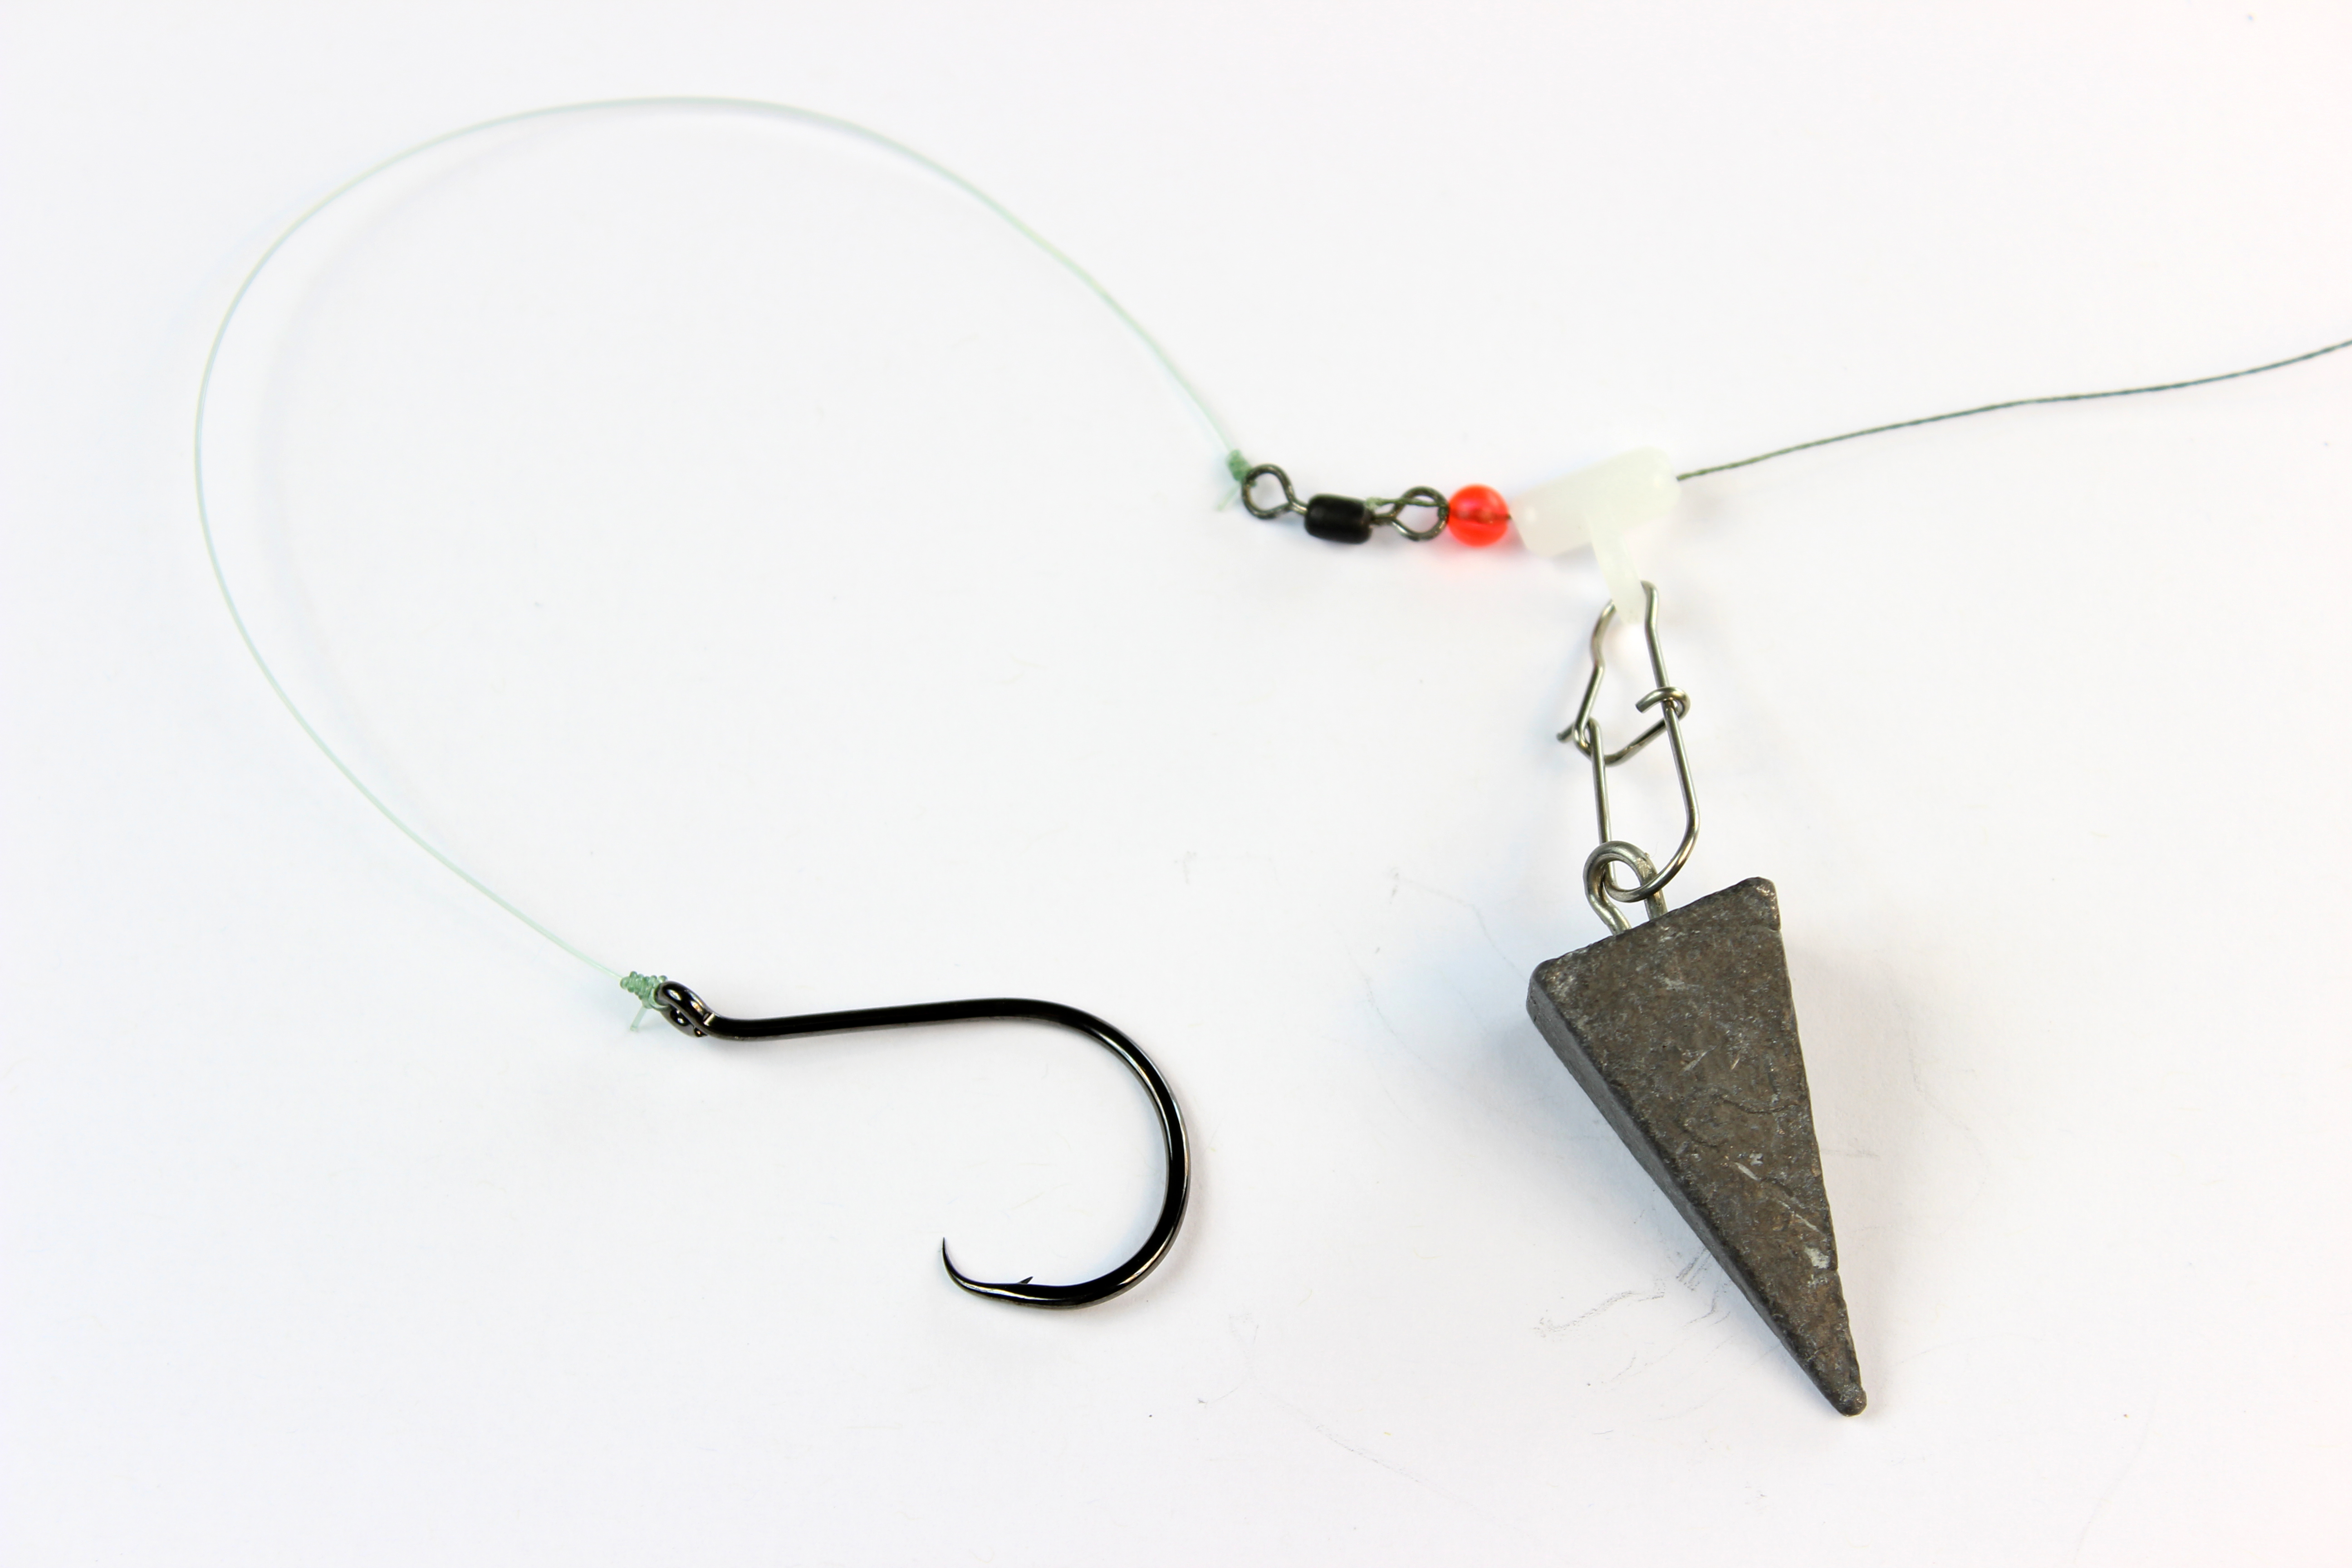  Catfish Hooks for Catfishing – Catfishing Tackle